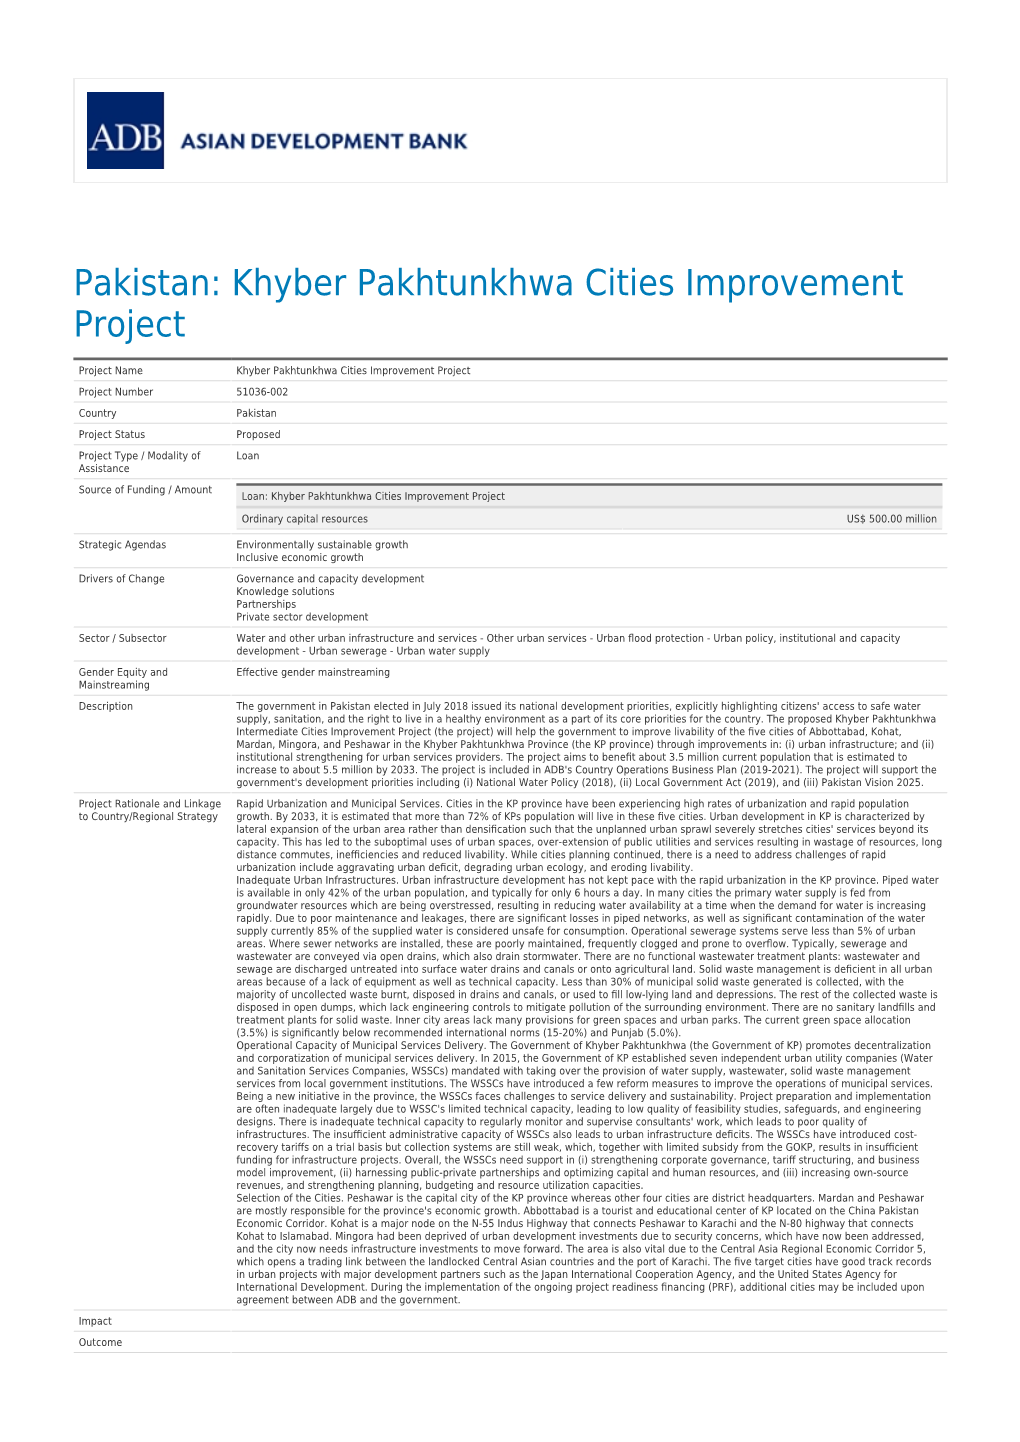 Pakistan: Khyber Pakhtunkhwa Cities Improvement Project